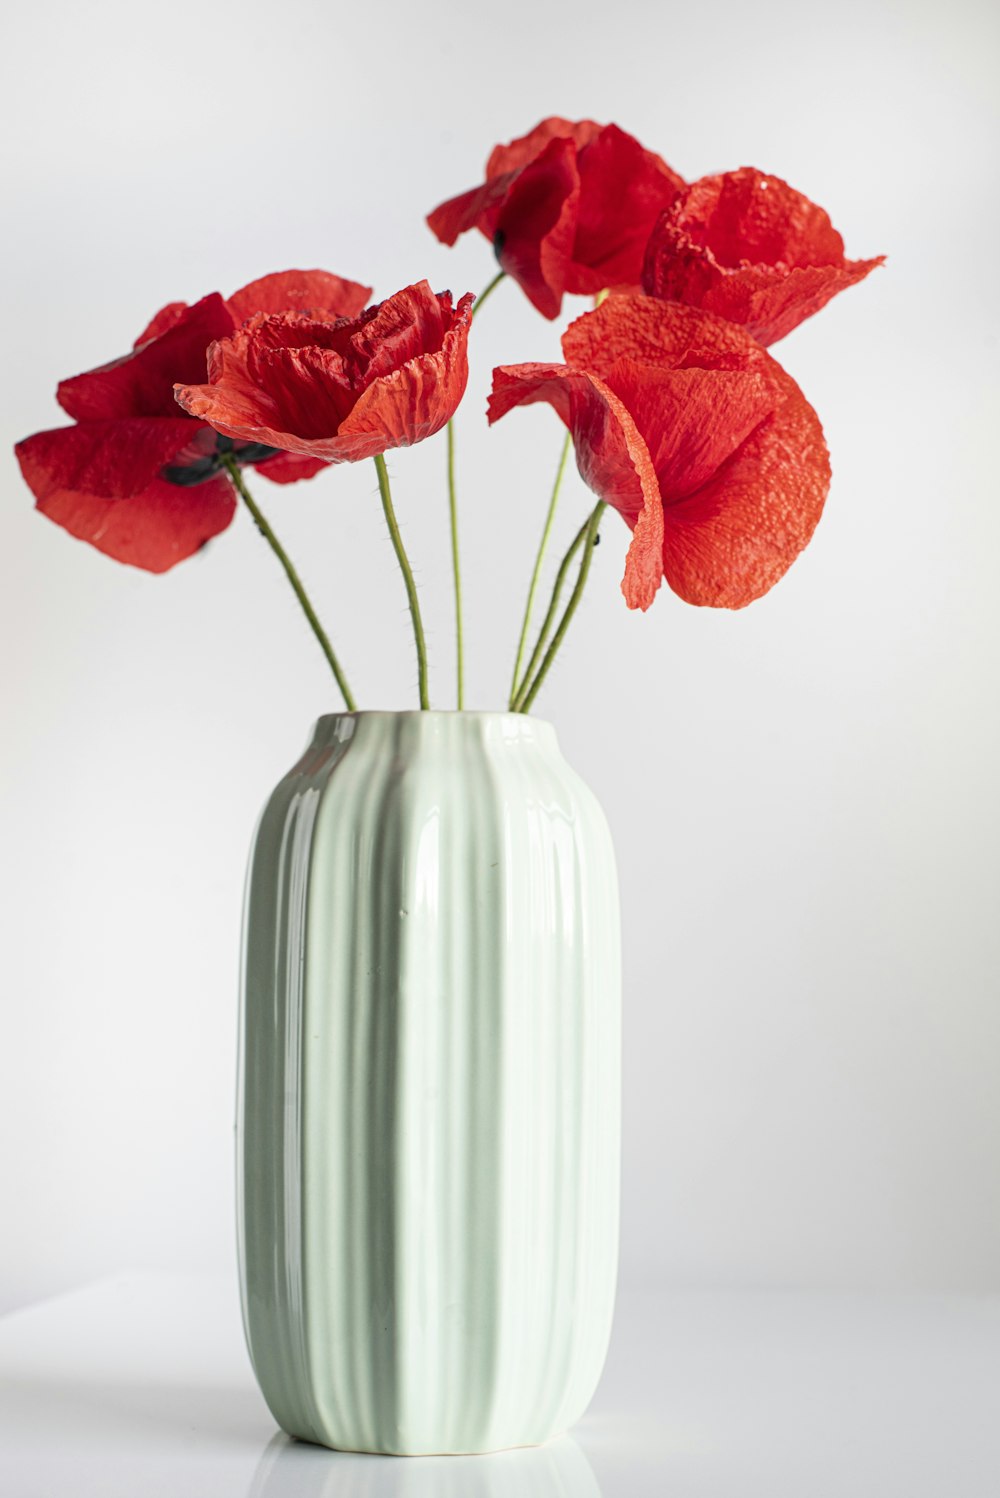 Vase De Fleurs Photos | Télécharger des images gratuites sur Unsplash